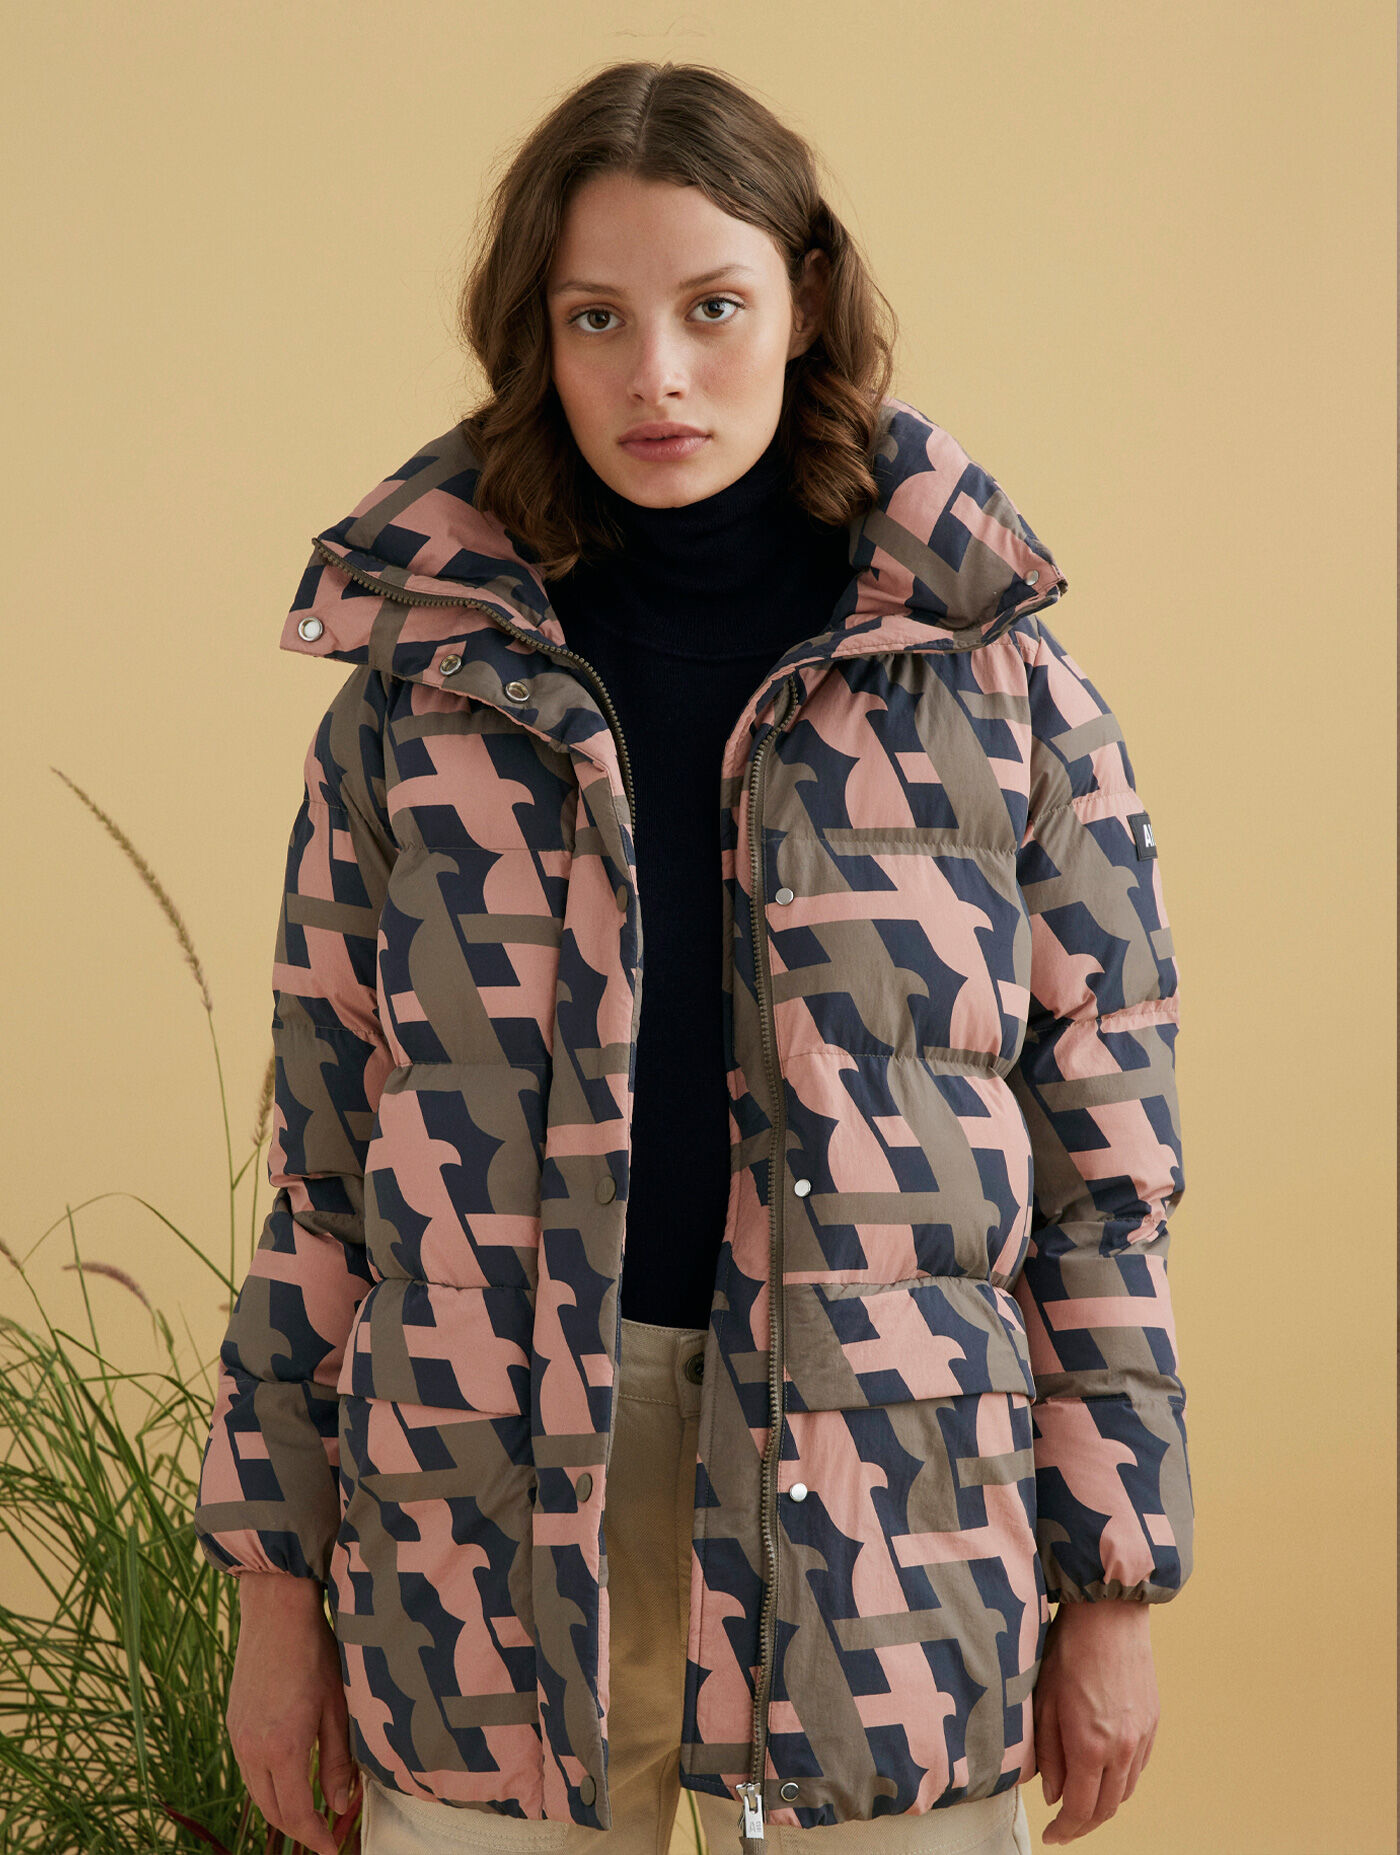 Maolijer Women's Reversible Puffer Jacket Lightweight Packable Full-Zip Water-Resistant Winter Coat 